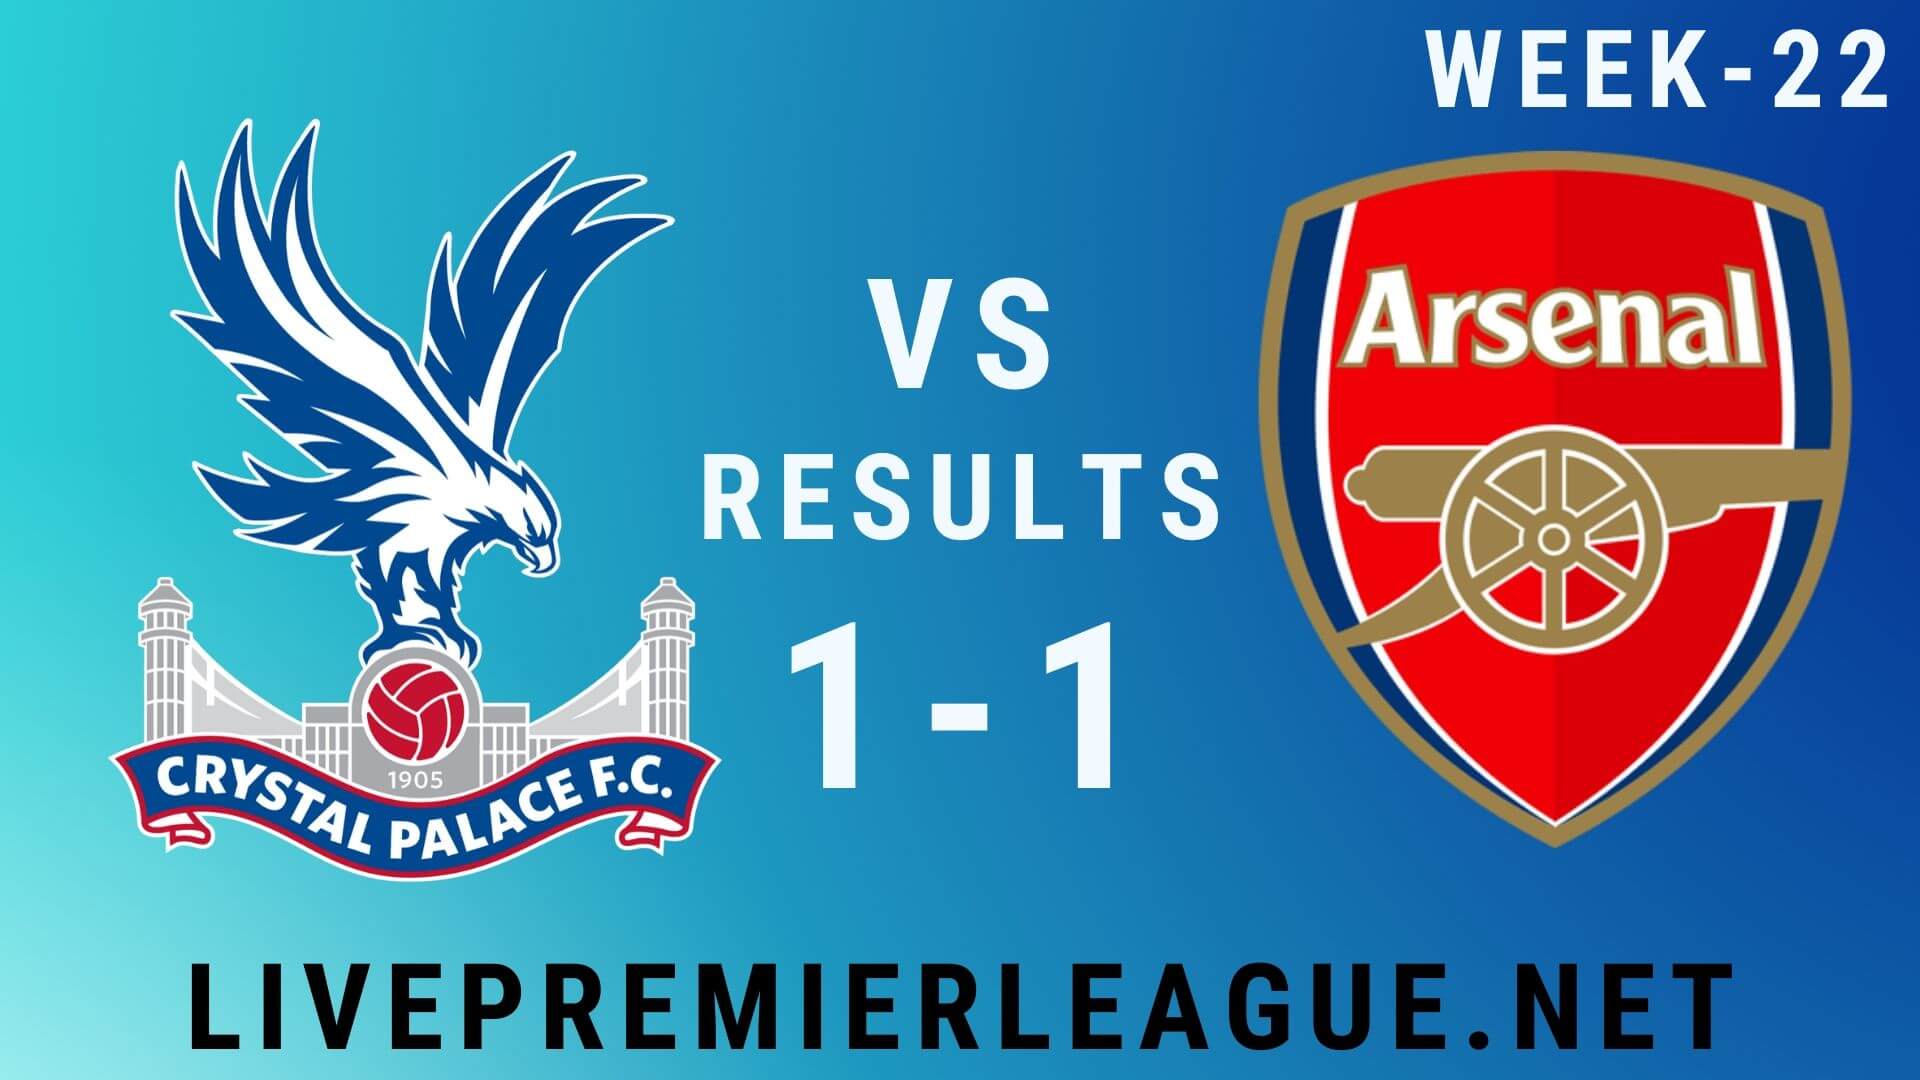 Crystal Palace Vs Arsenal | Week 22 Result 2020